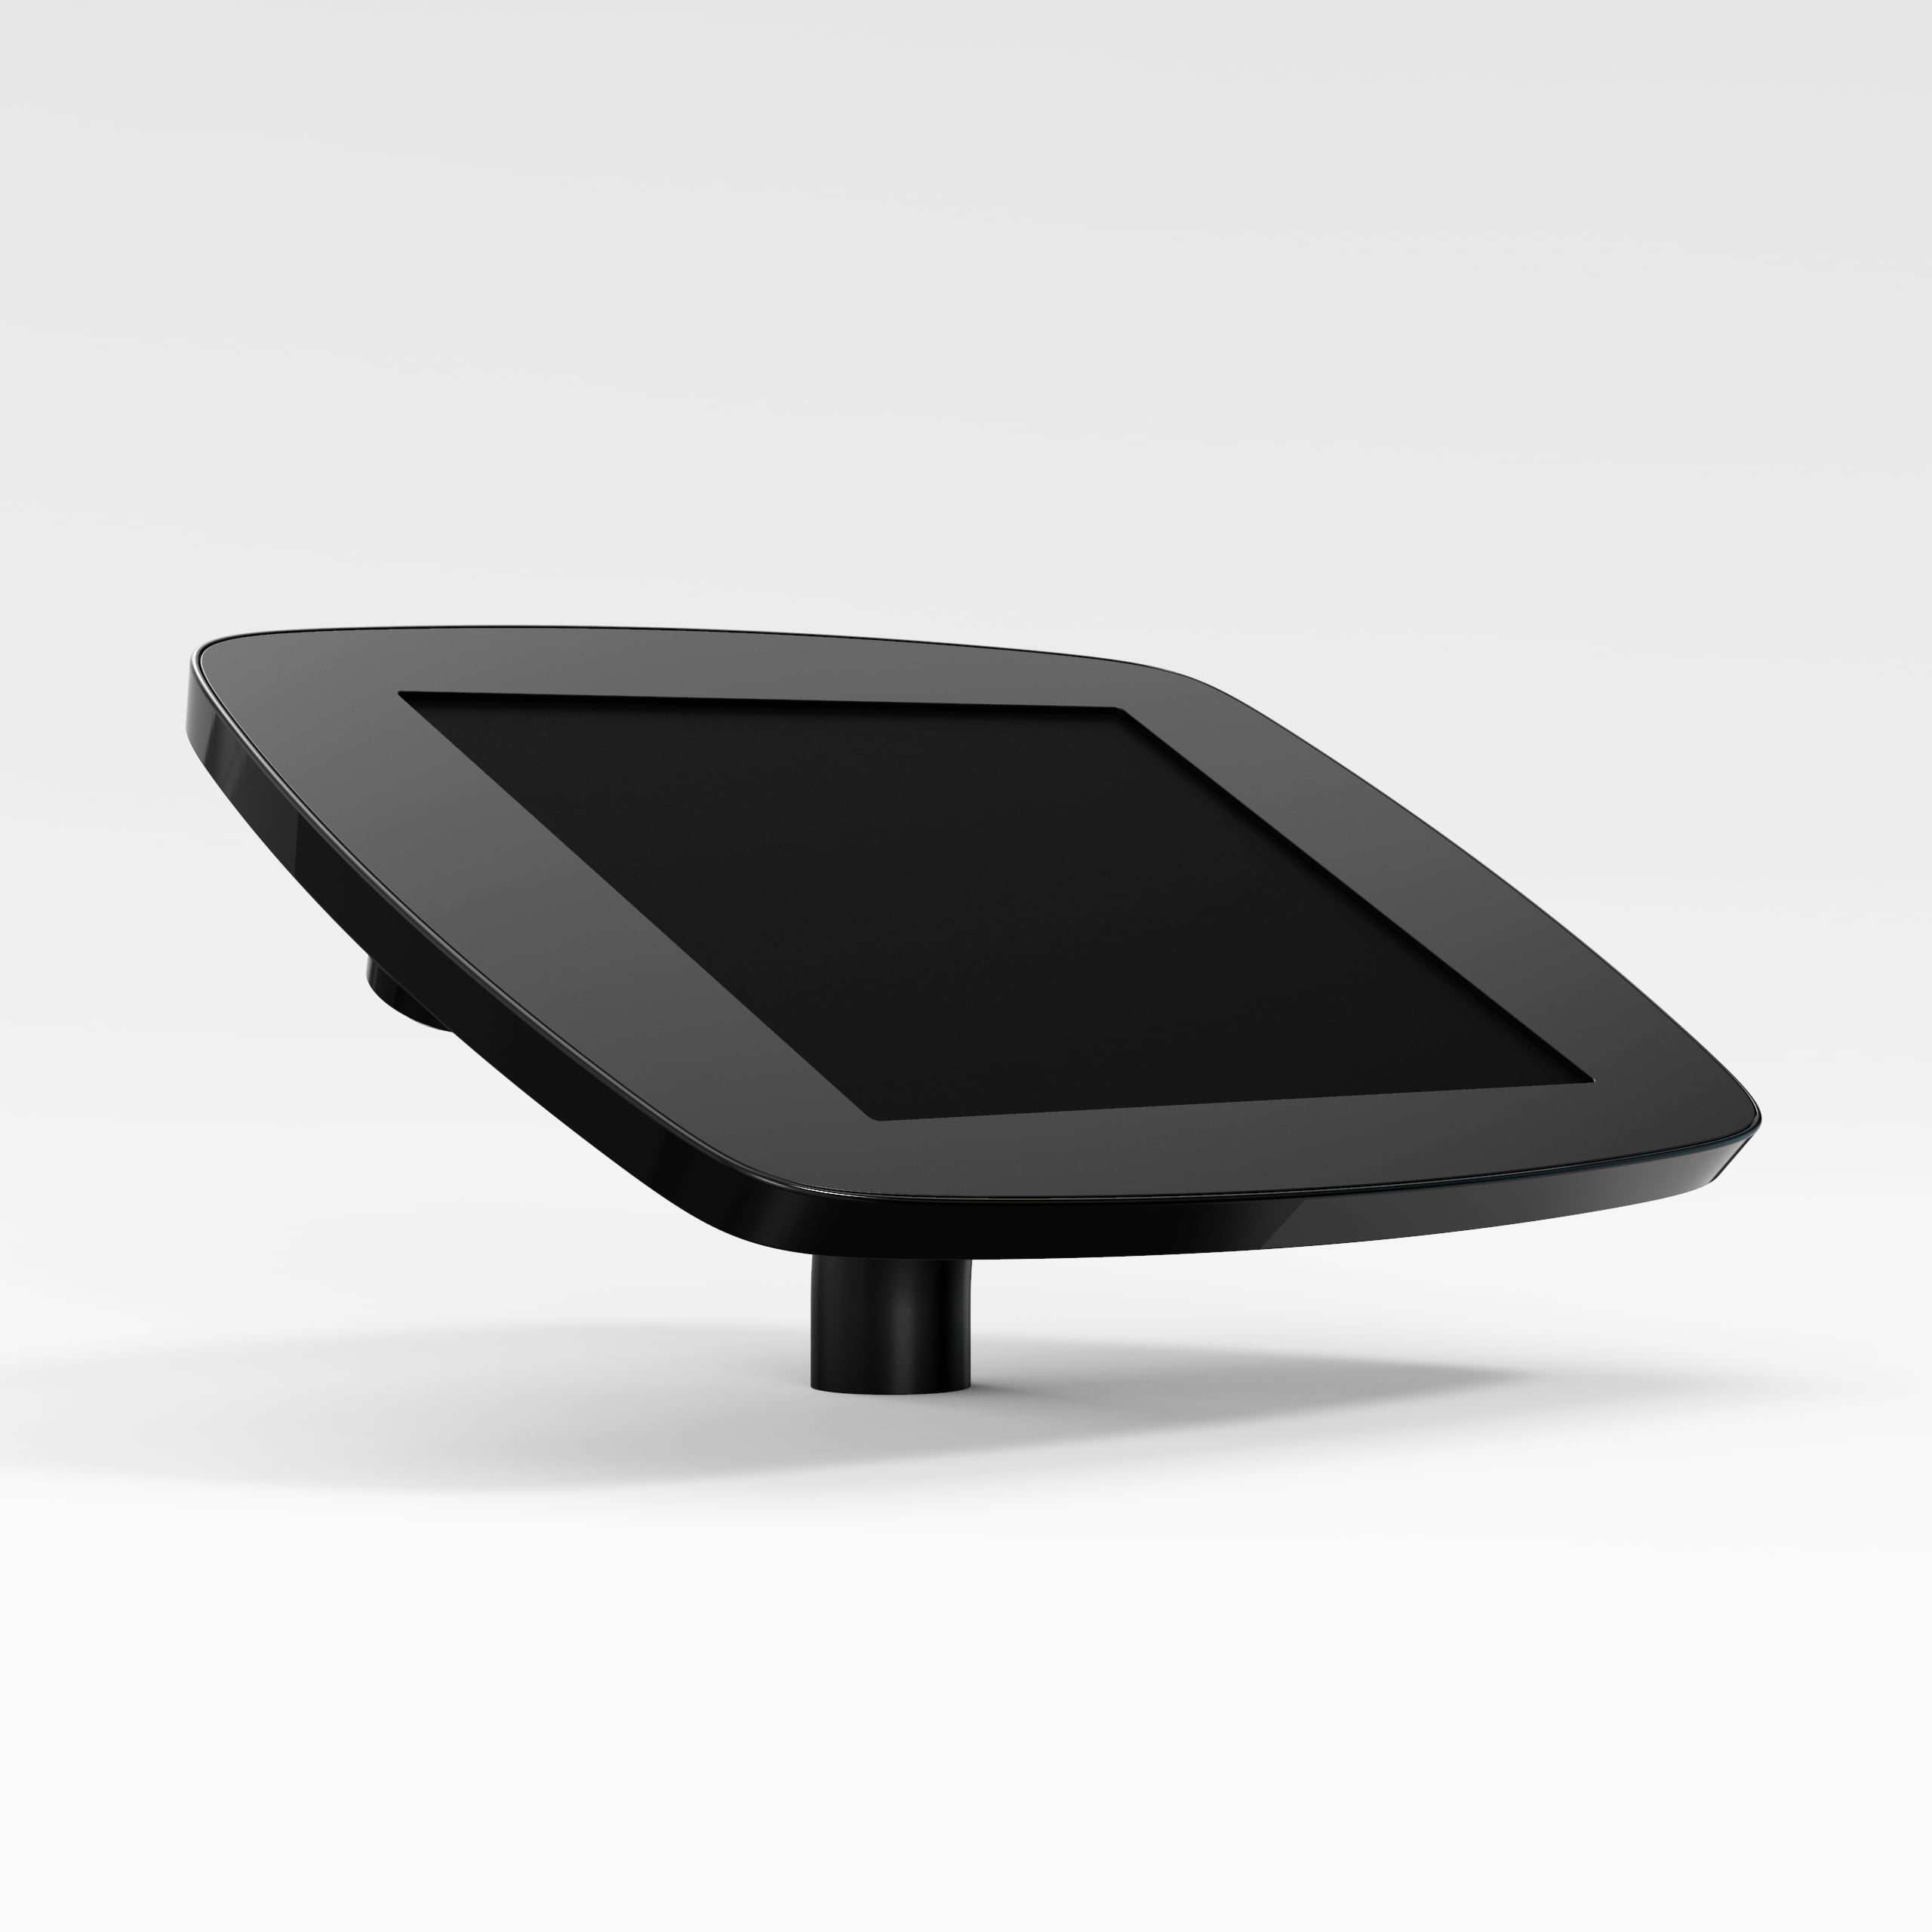 Bouncepad Desk supporto antifurto per tablet 25,6 cm [10.1] Nero (DESKBLKOPENCAM/OPENHOME A62)